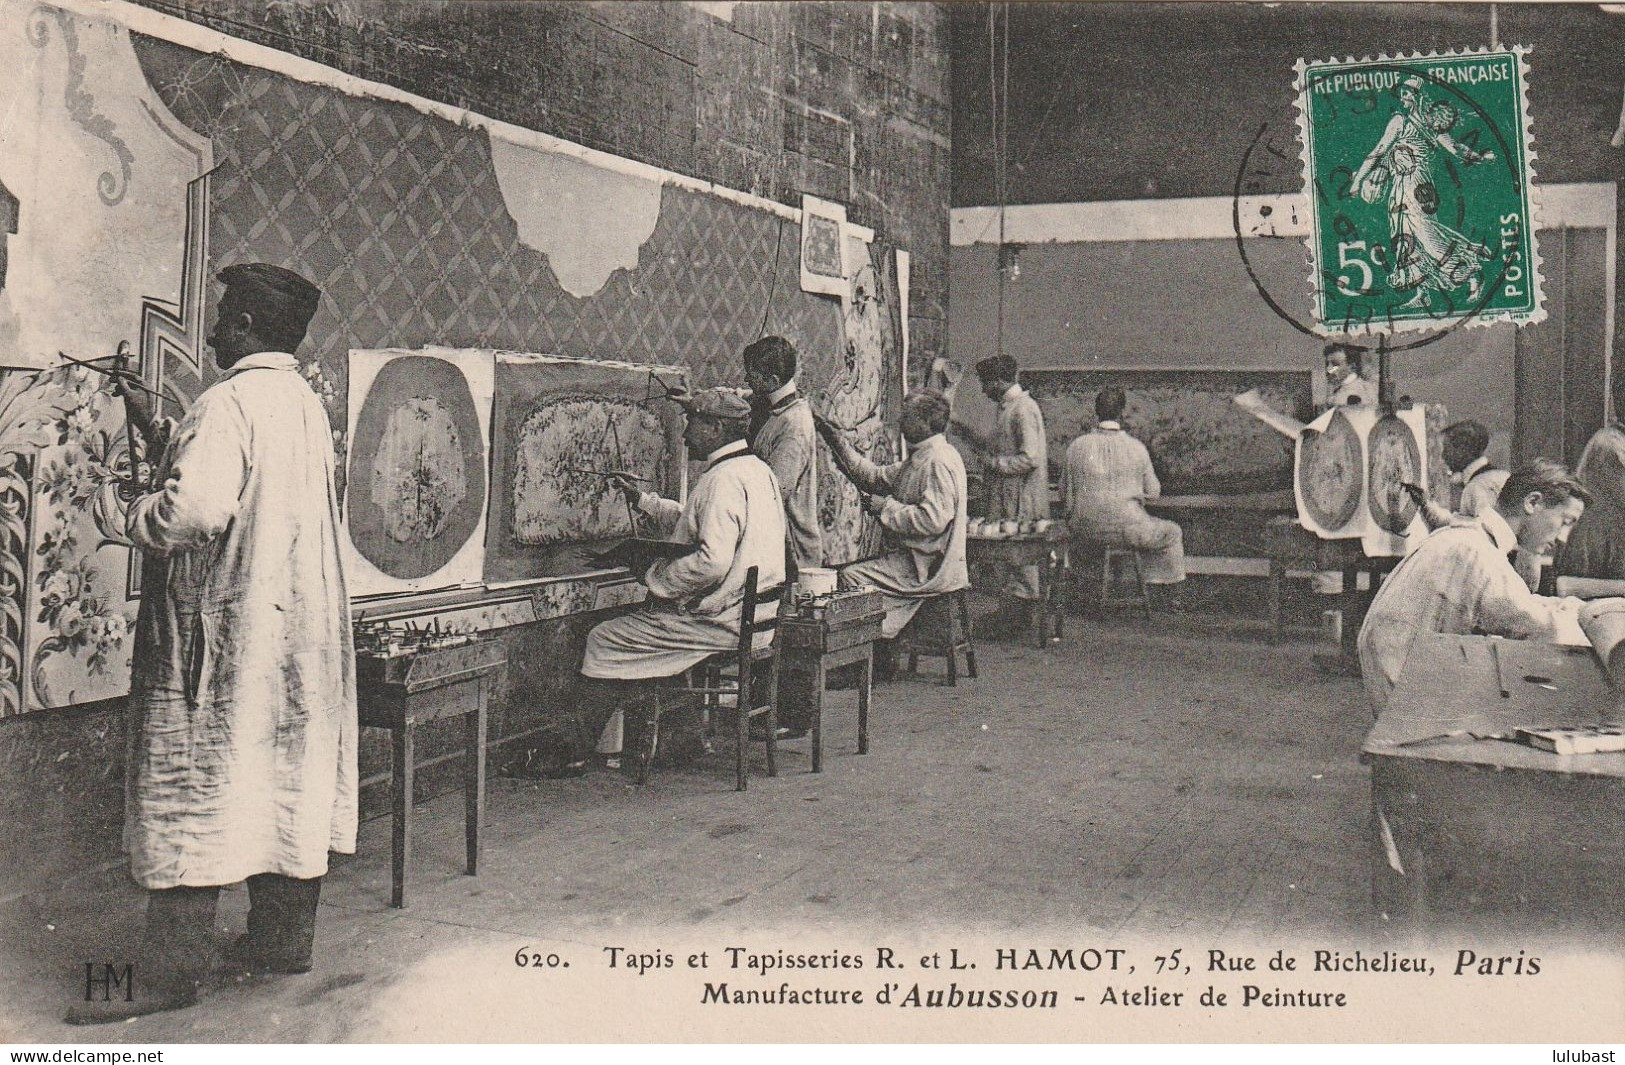 PARIS, 75 Rue De Richelieu - Tapis R. L. HAMOT D'Aubusson : Atelier De Peinture. - Arrondissement: 02